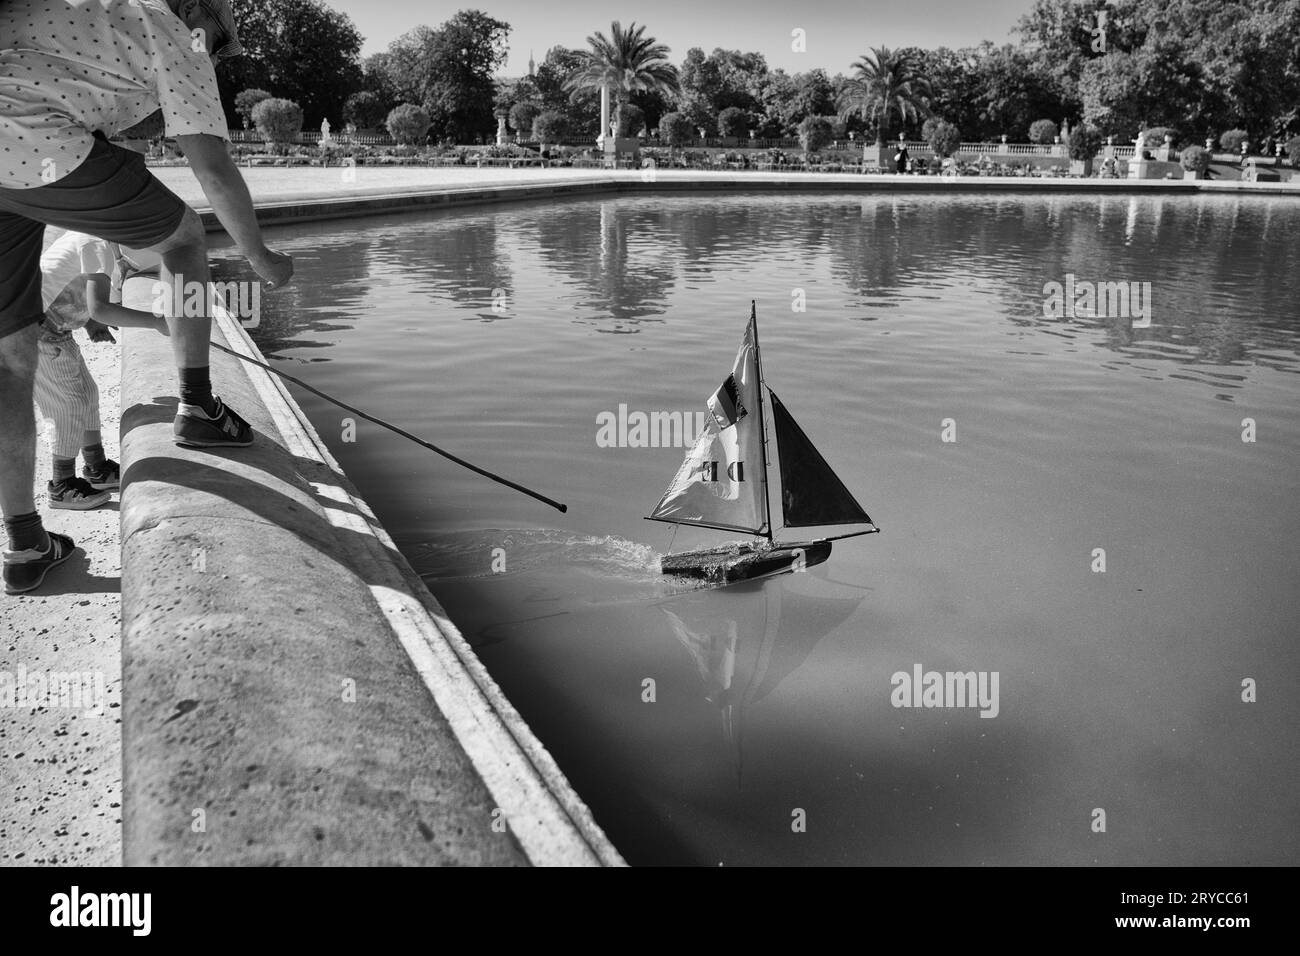 Salpa un modello di barca a vela sul lago nel Garden du Luxembourg, Parigi, Francia Foto Stock